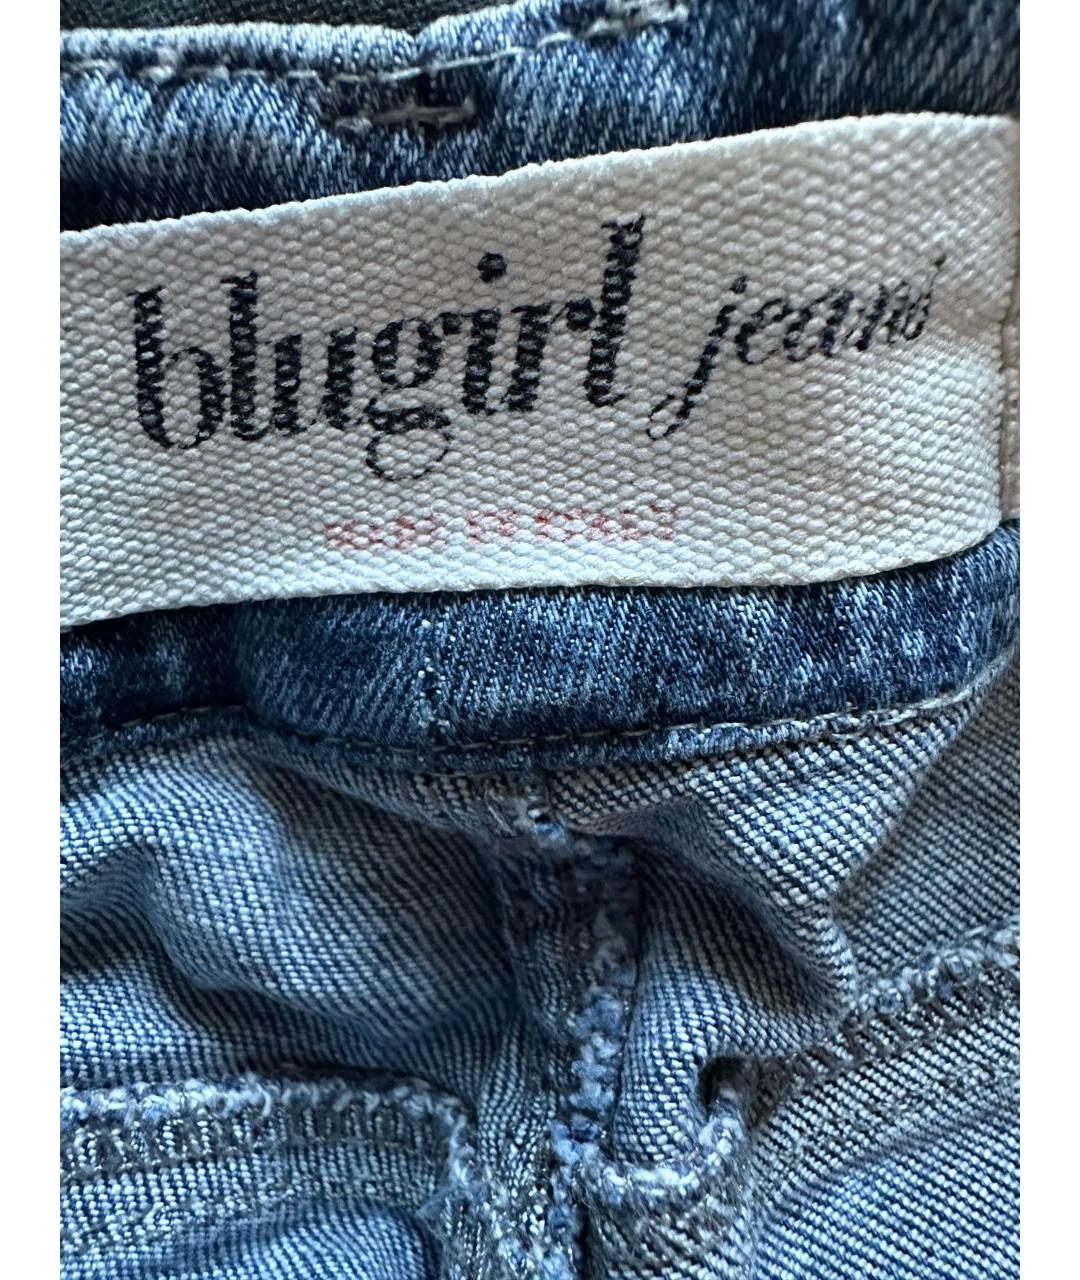 BLUGIRL Синие прямые джинсы, фото 3